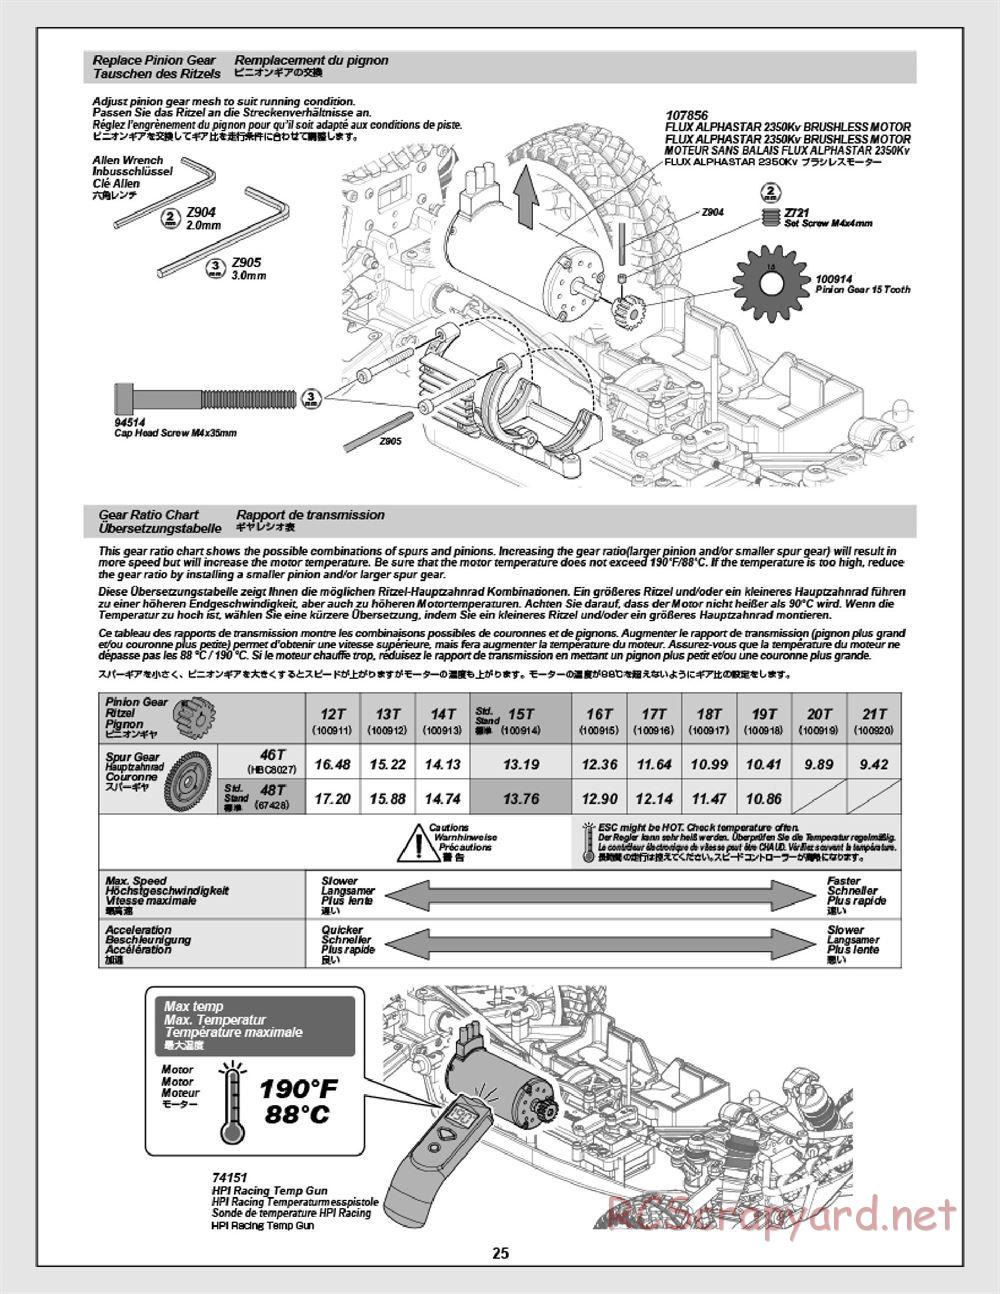 HPI - Apache C1 Flux - Manual - Page 25